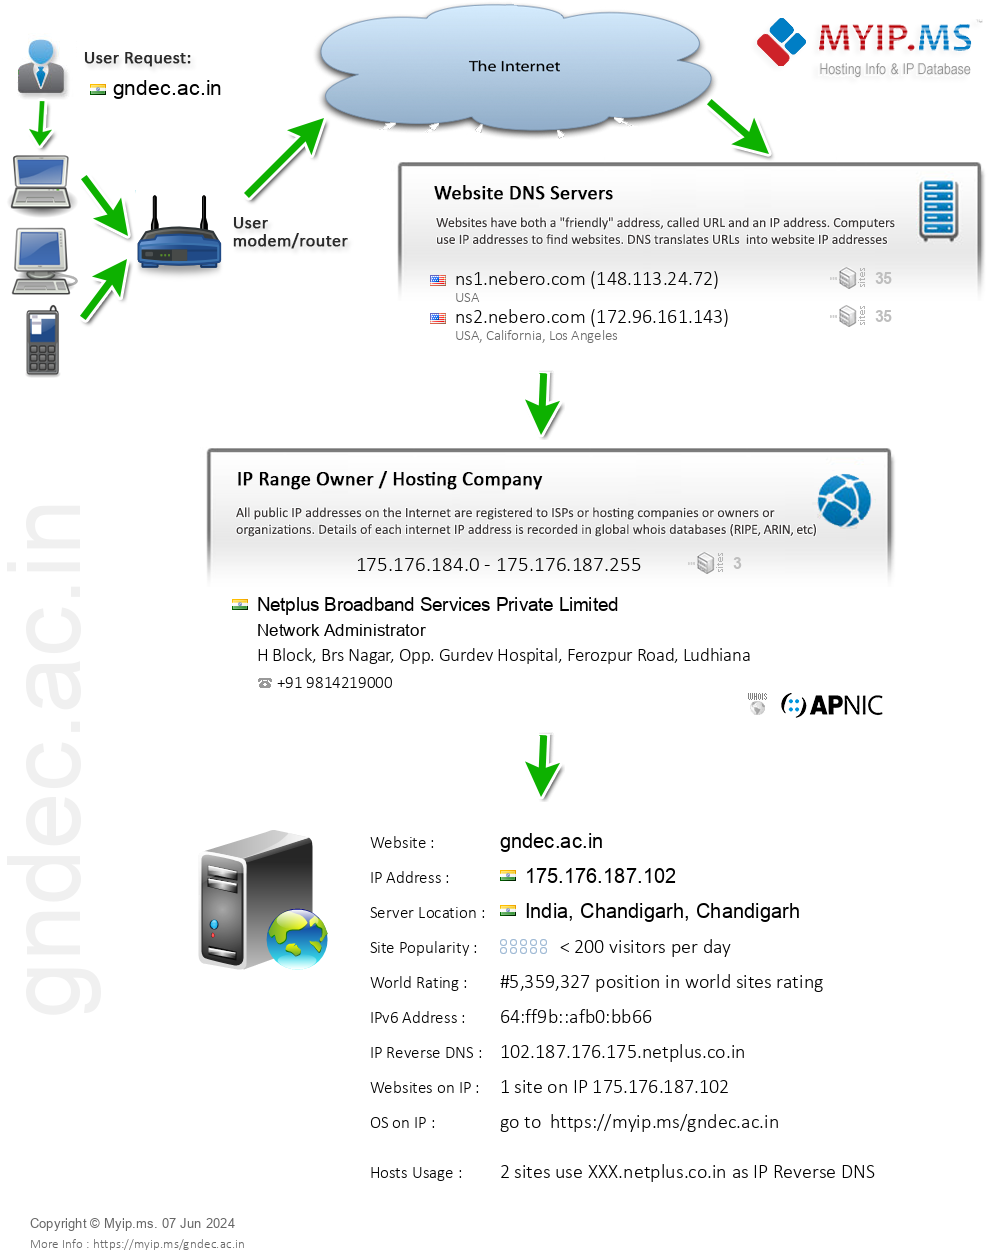 Gndec.ac.in - Website Hosting Visual IP Diagram